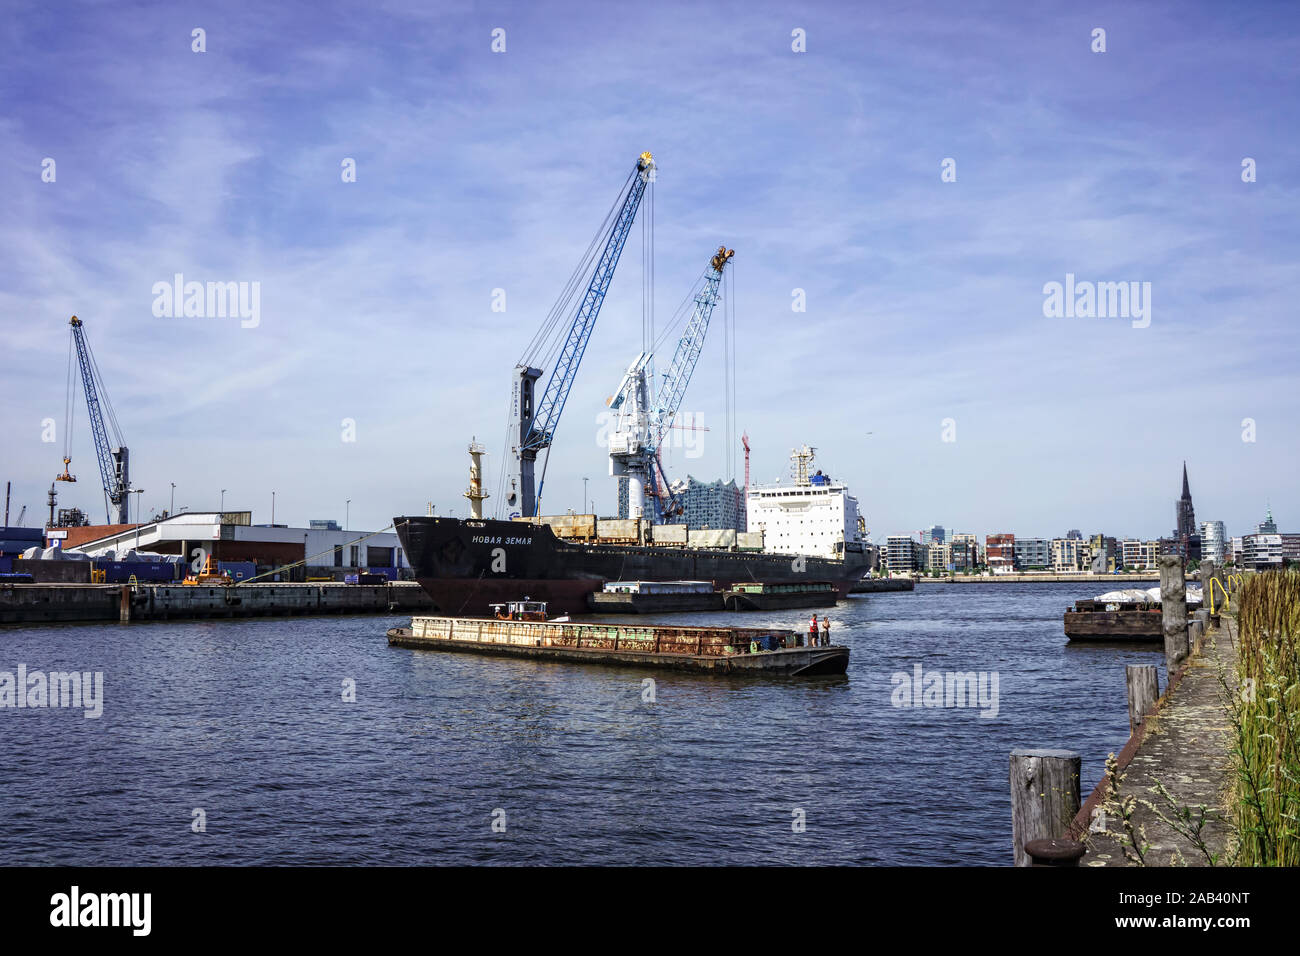 Frachter beim Löschen der Ladung im Hamburger Hafen |The discharge of the cargo freighter in the harbor of Hamburg| Stock Photo